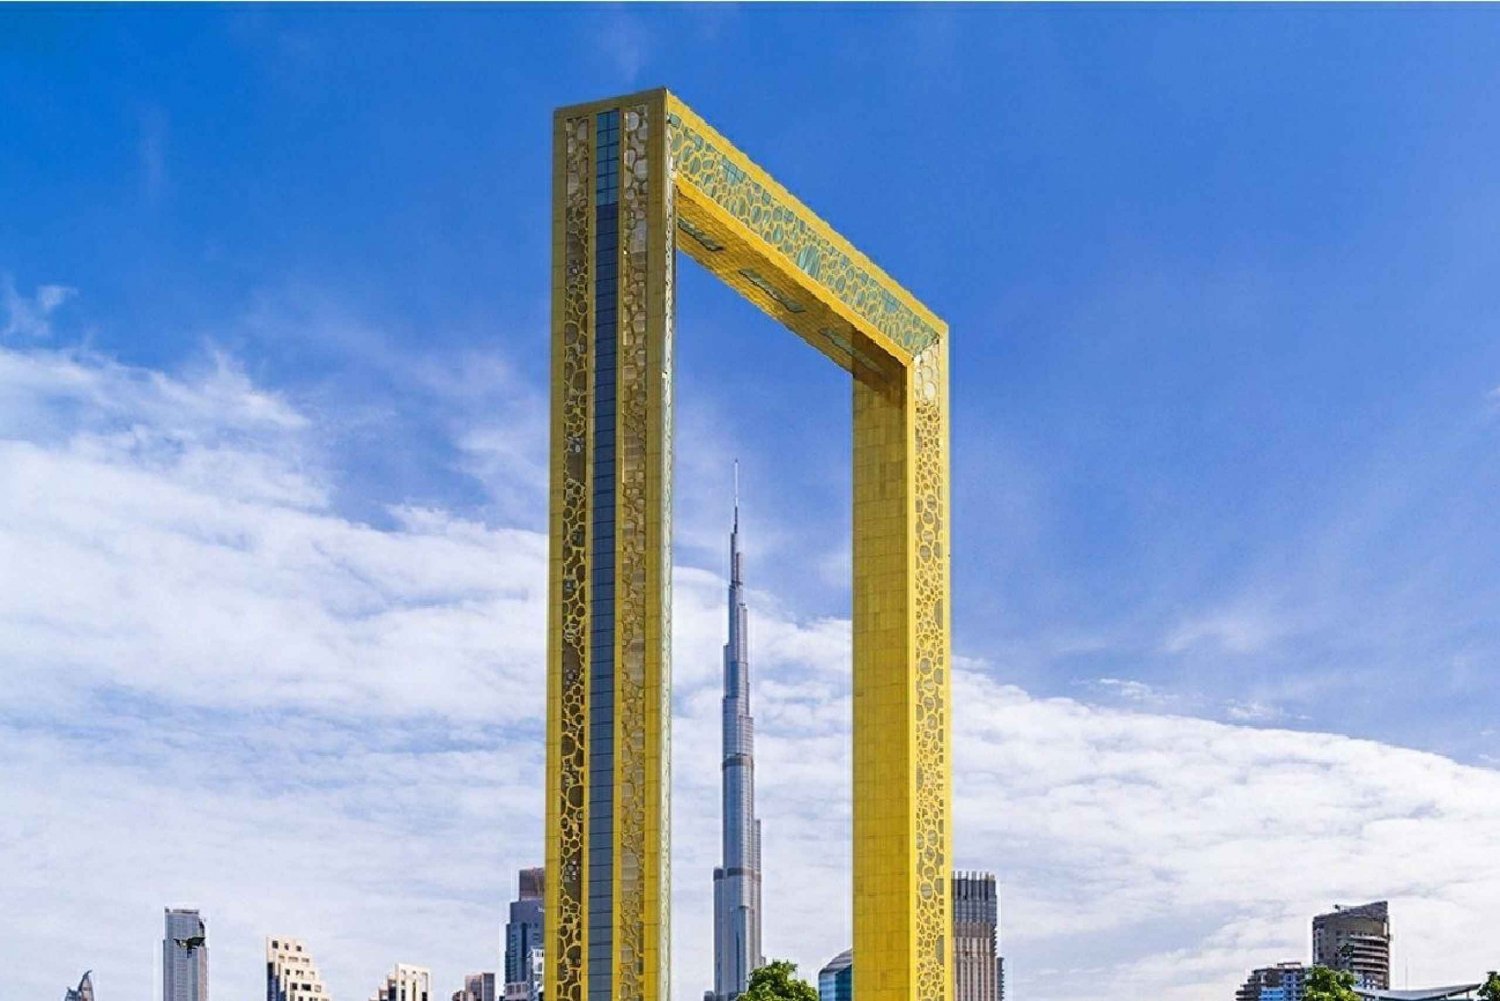 Dubai: Hoogtepunten van de stad Privé Layover Tour met Transfer